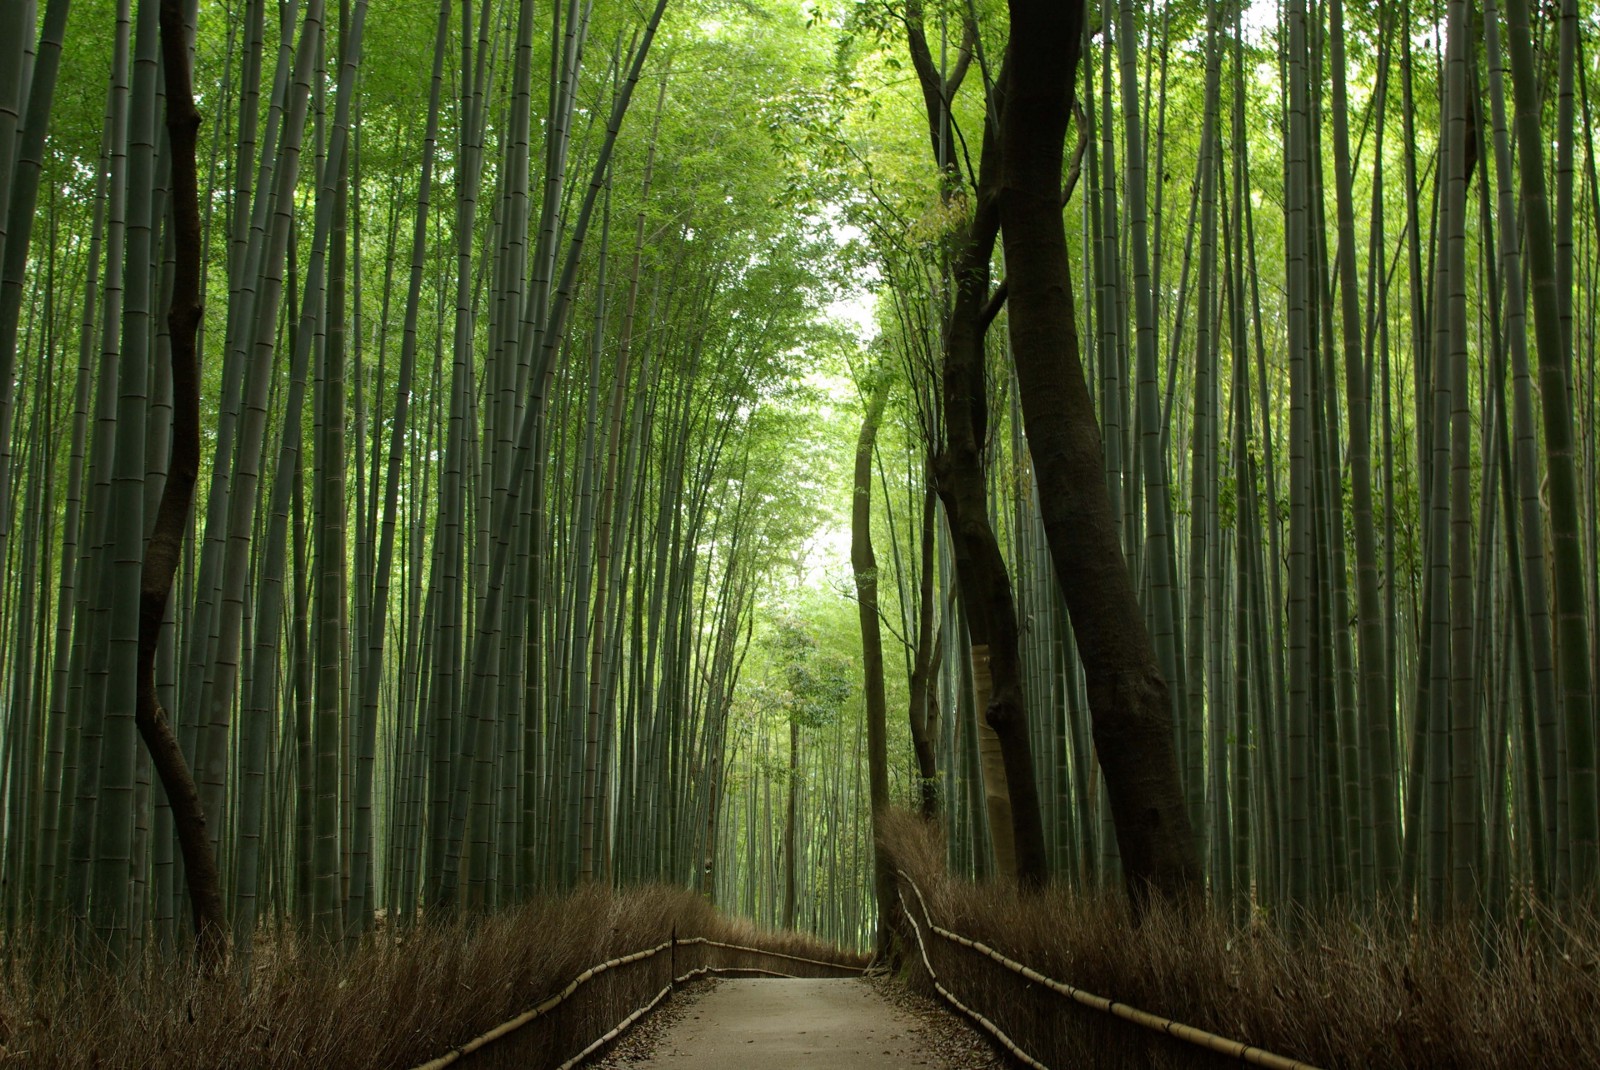 The peaceful path at the bamboo grove in Arashiyama